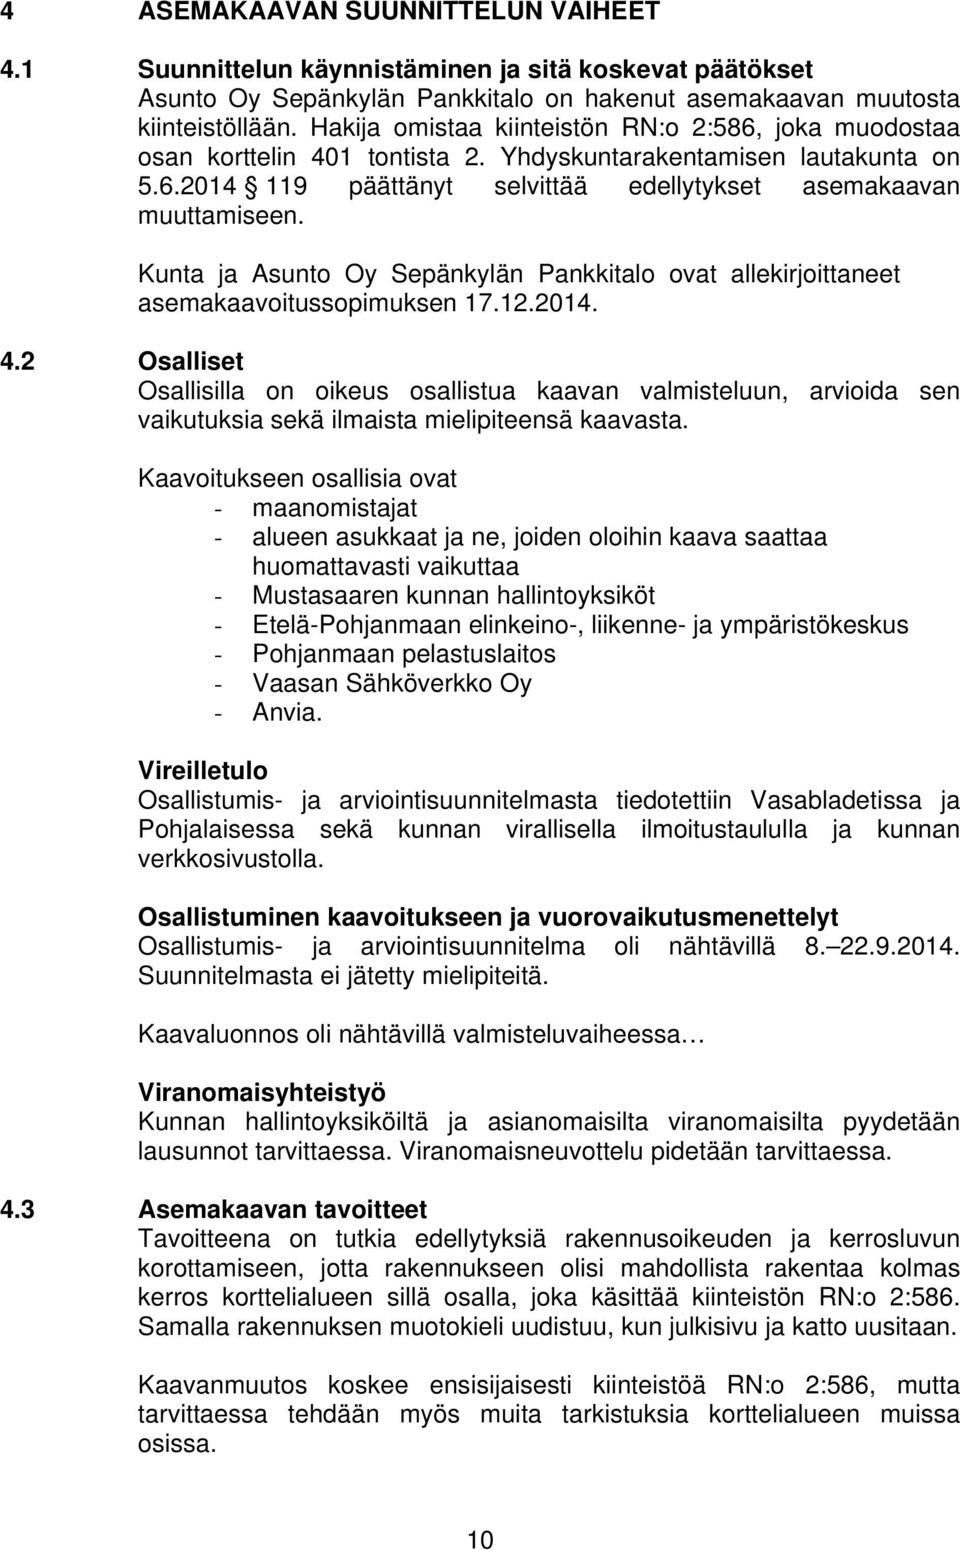 Kunta ja Asunto Oy Sepänkylän Pankkitalo ovat allekirjoittaneet asemakaavoitussopimuksen 17.12.2014. 4.